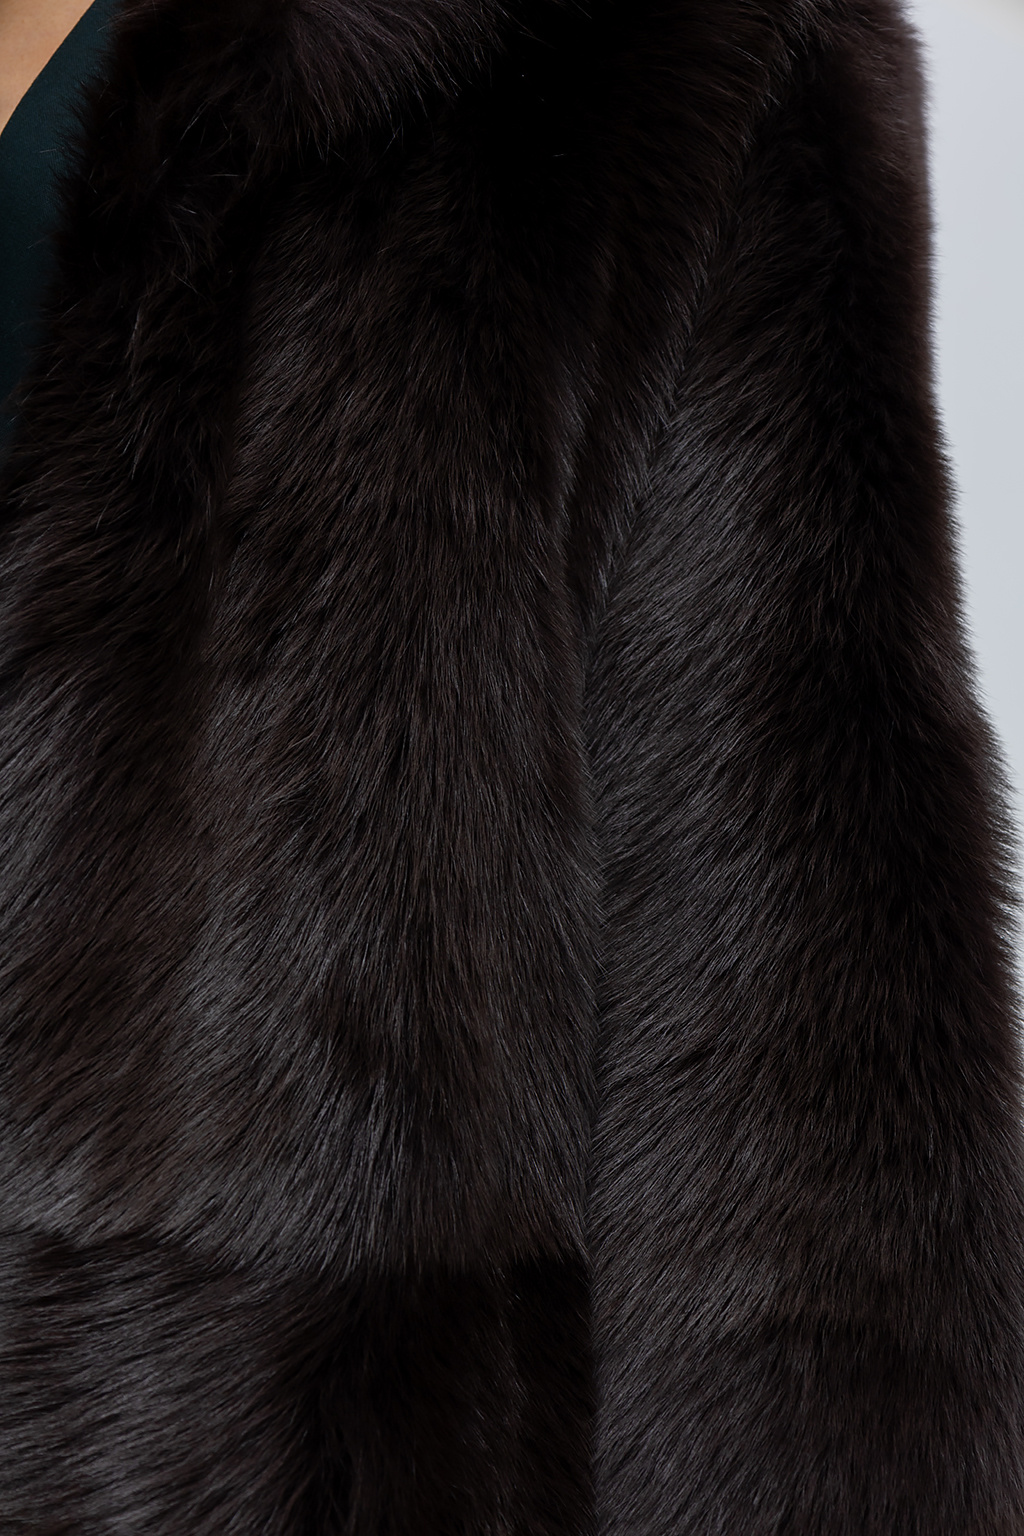 Bottega Veneta Fur coat